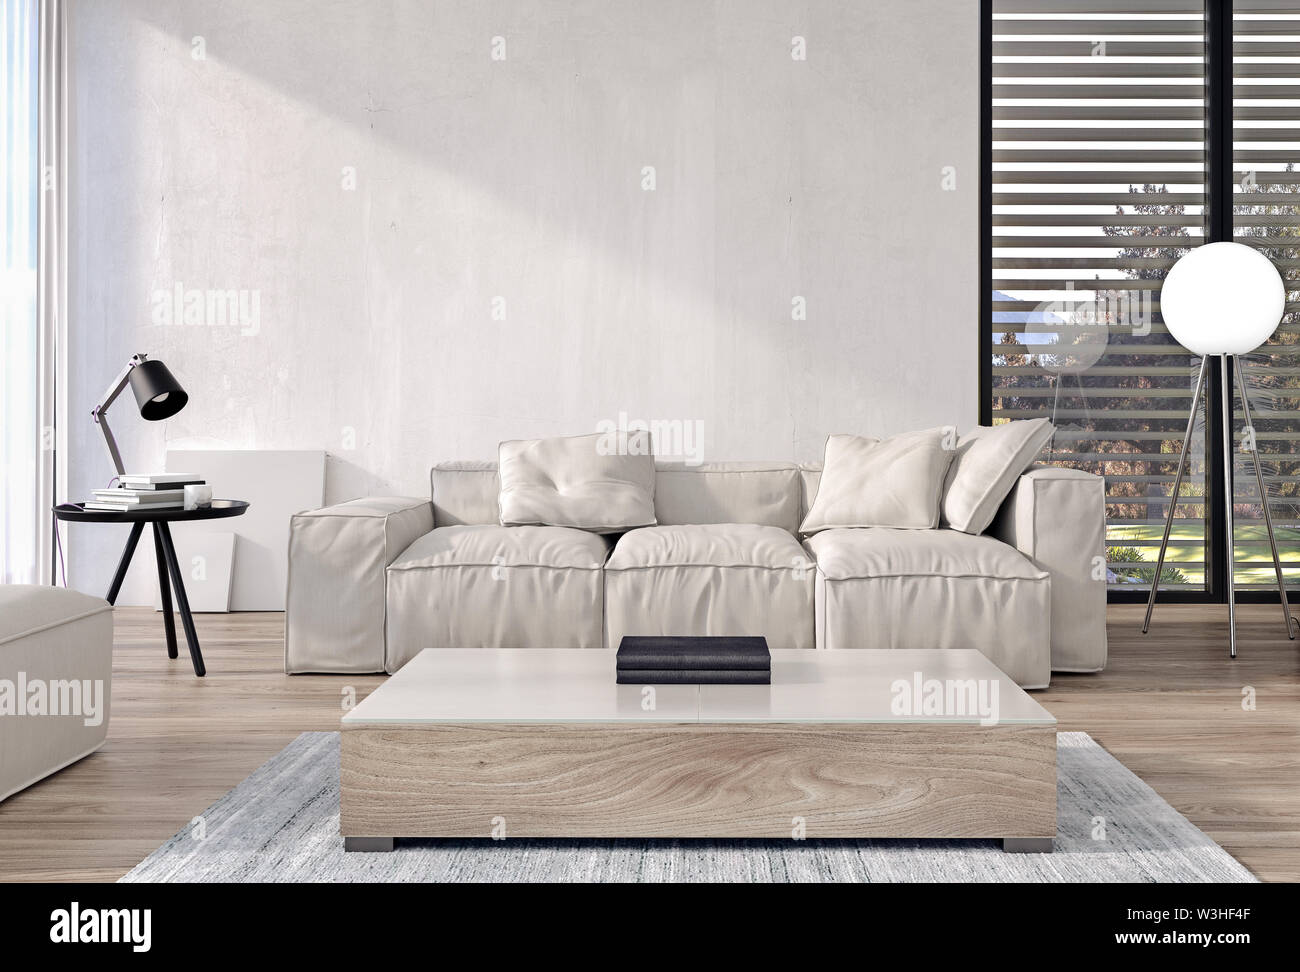 Modernes Interieur aus Wohnzimmer mit italienischen Möbeln und großen Schiebetüren und Windows, den Garten und die Bäume im Hintergrund, 3D-Rendering Stockfoto